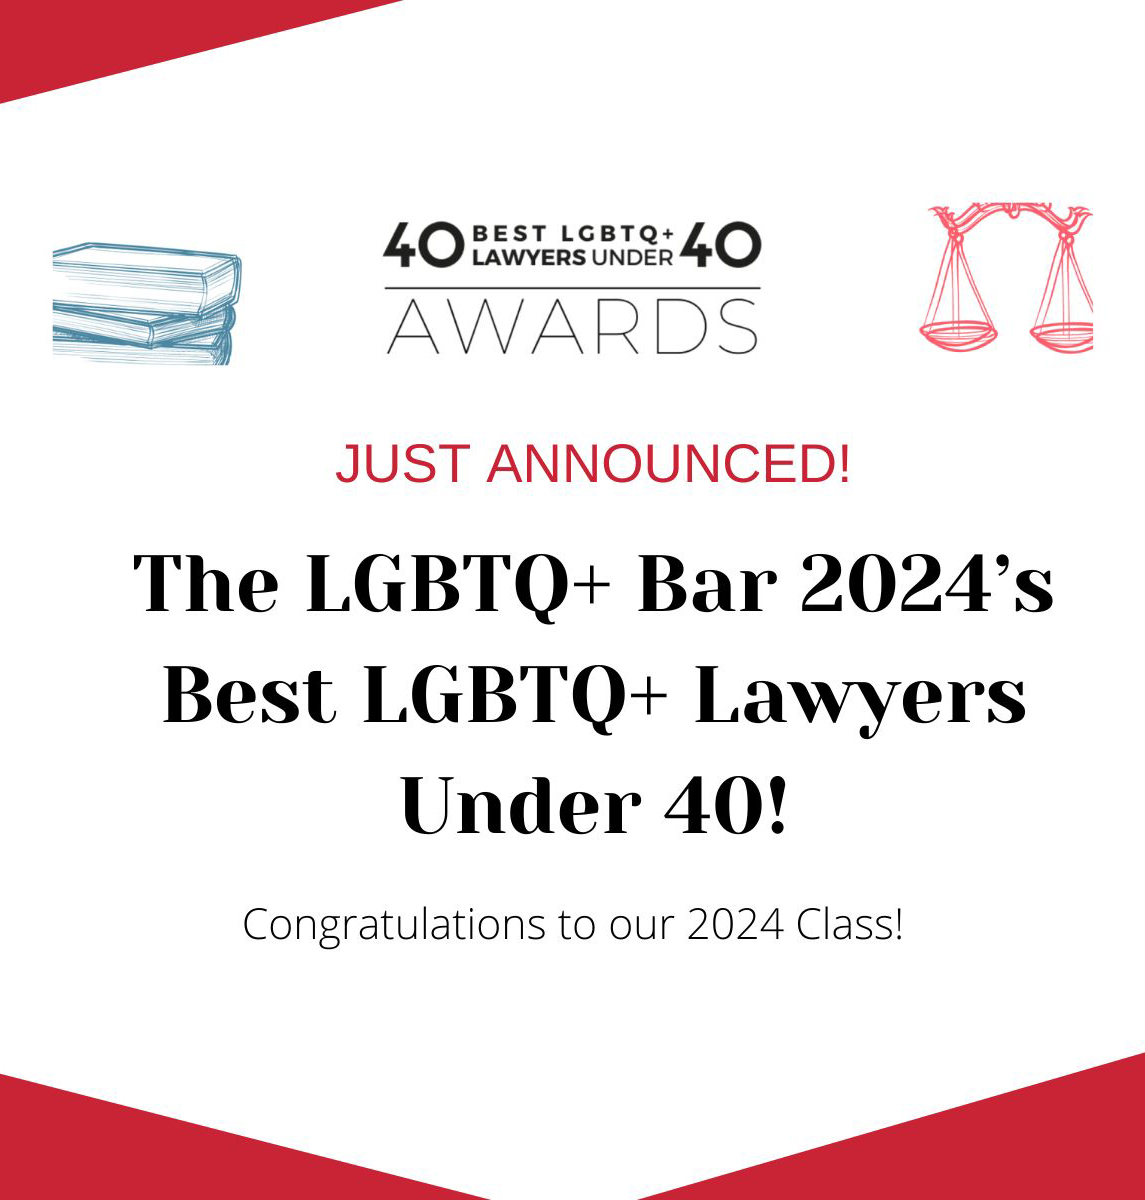 The L.G.B.T.Q.+ Bar's 2024 Best L.G.B.T.Q.+ Lawyers under 40!